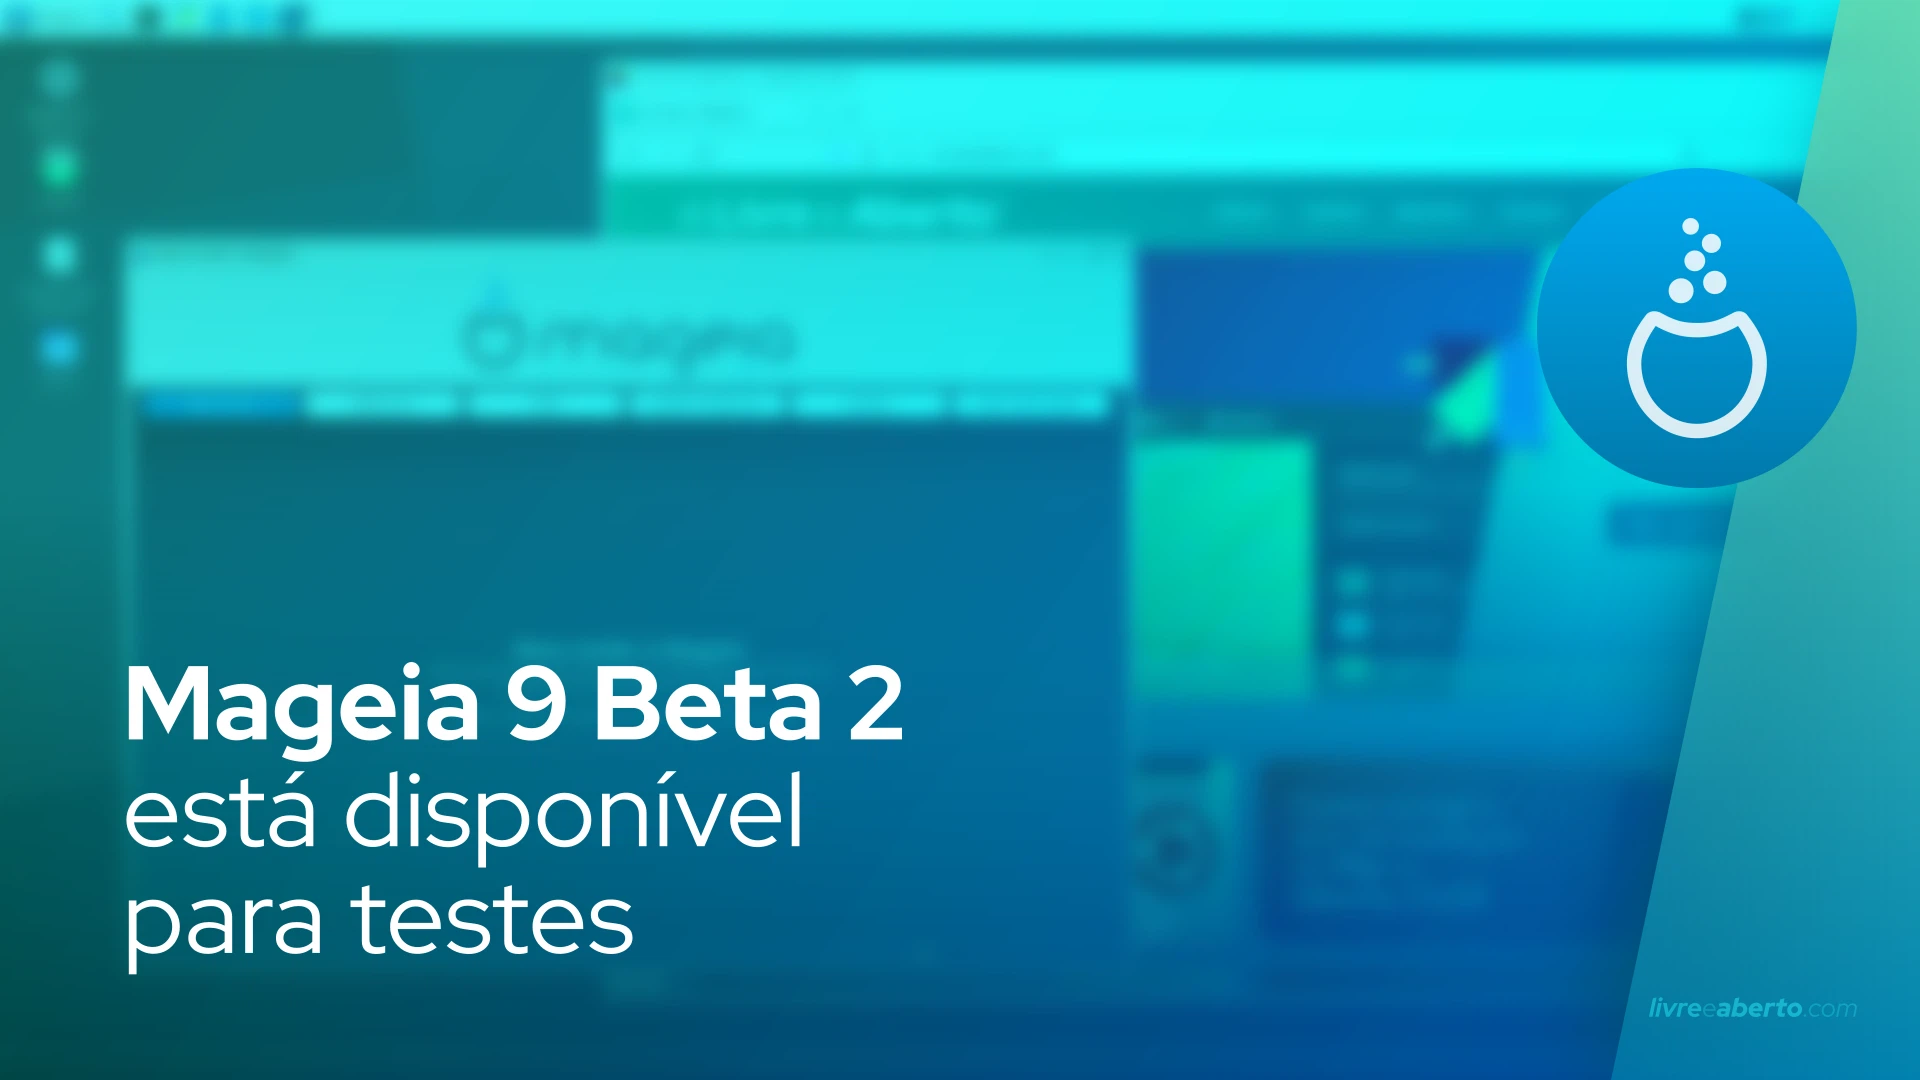 Mageia 9 Beta 2 está disponível para testes